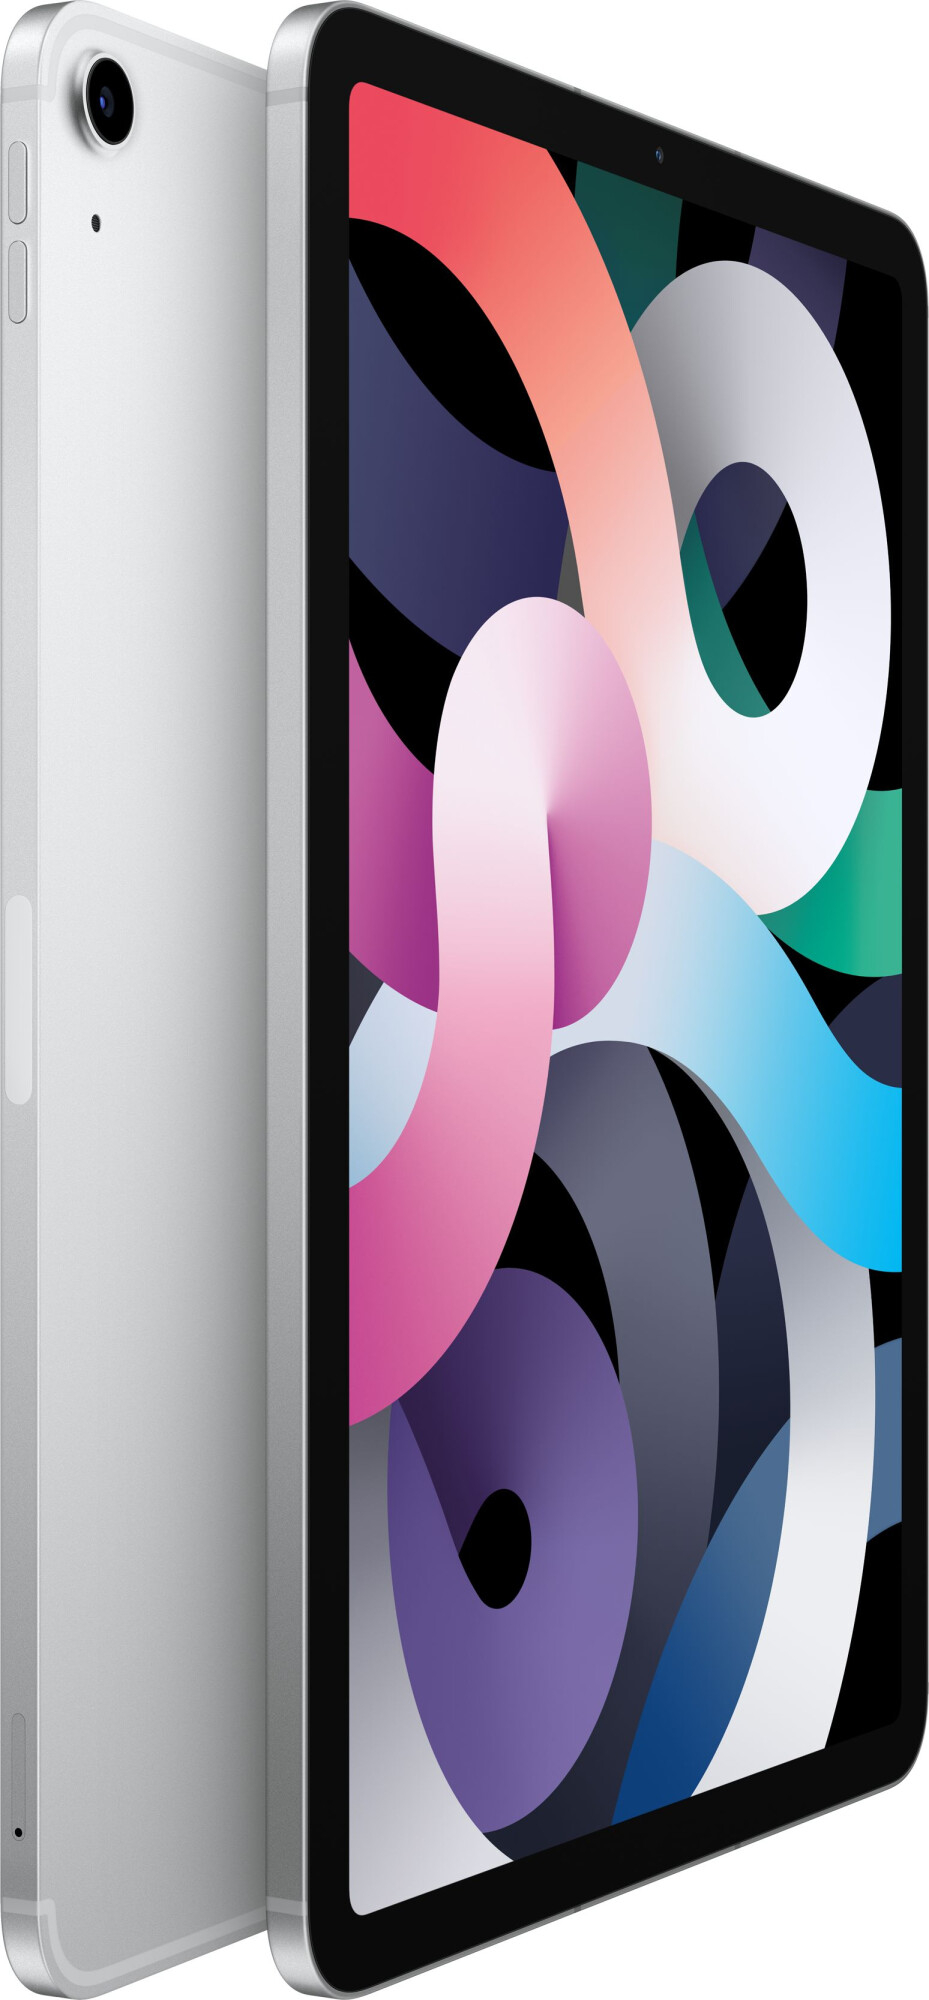 iPad Air 2020 Wi-Fi 64GB Silver (MYFN2) 